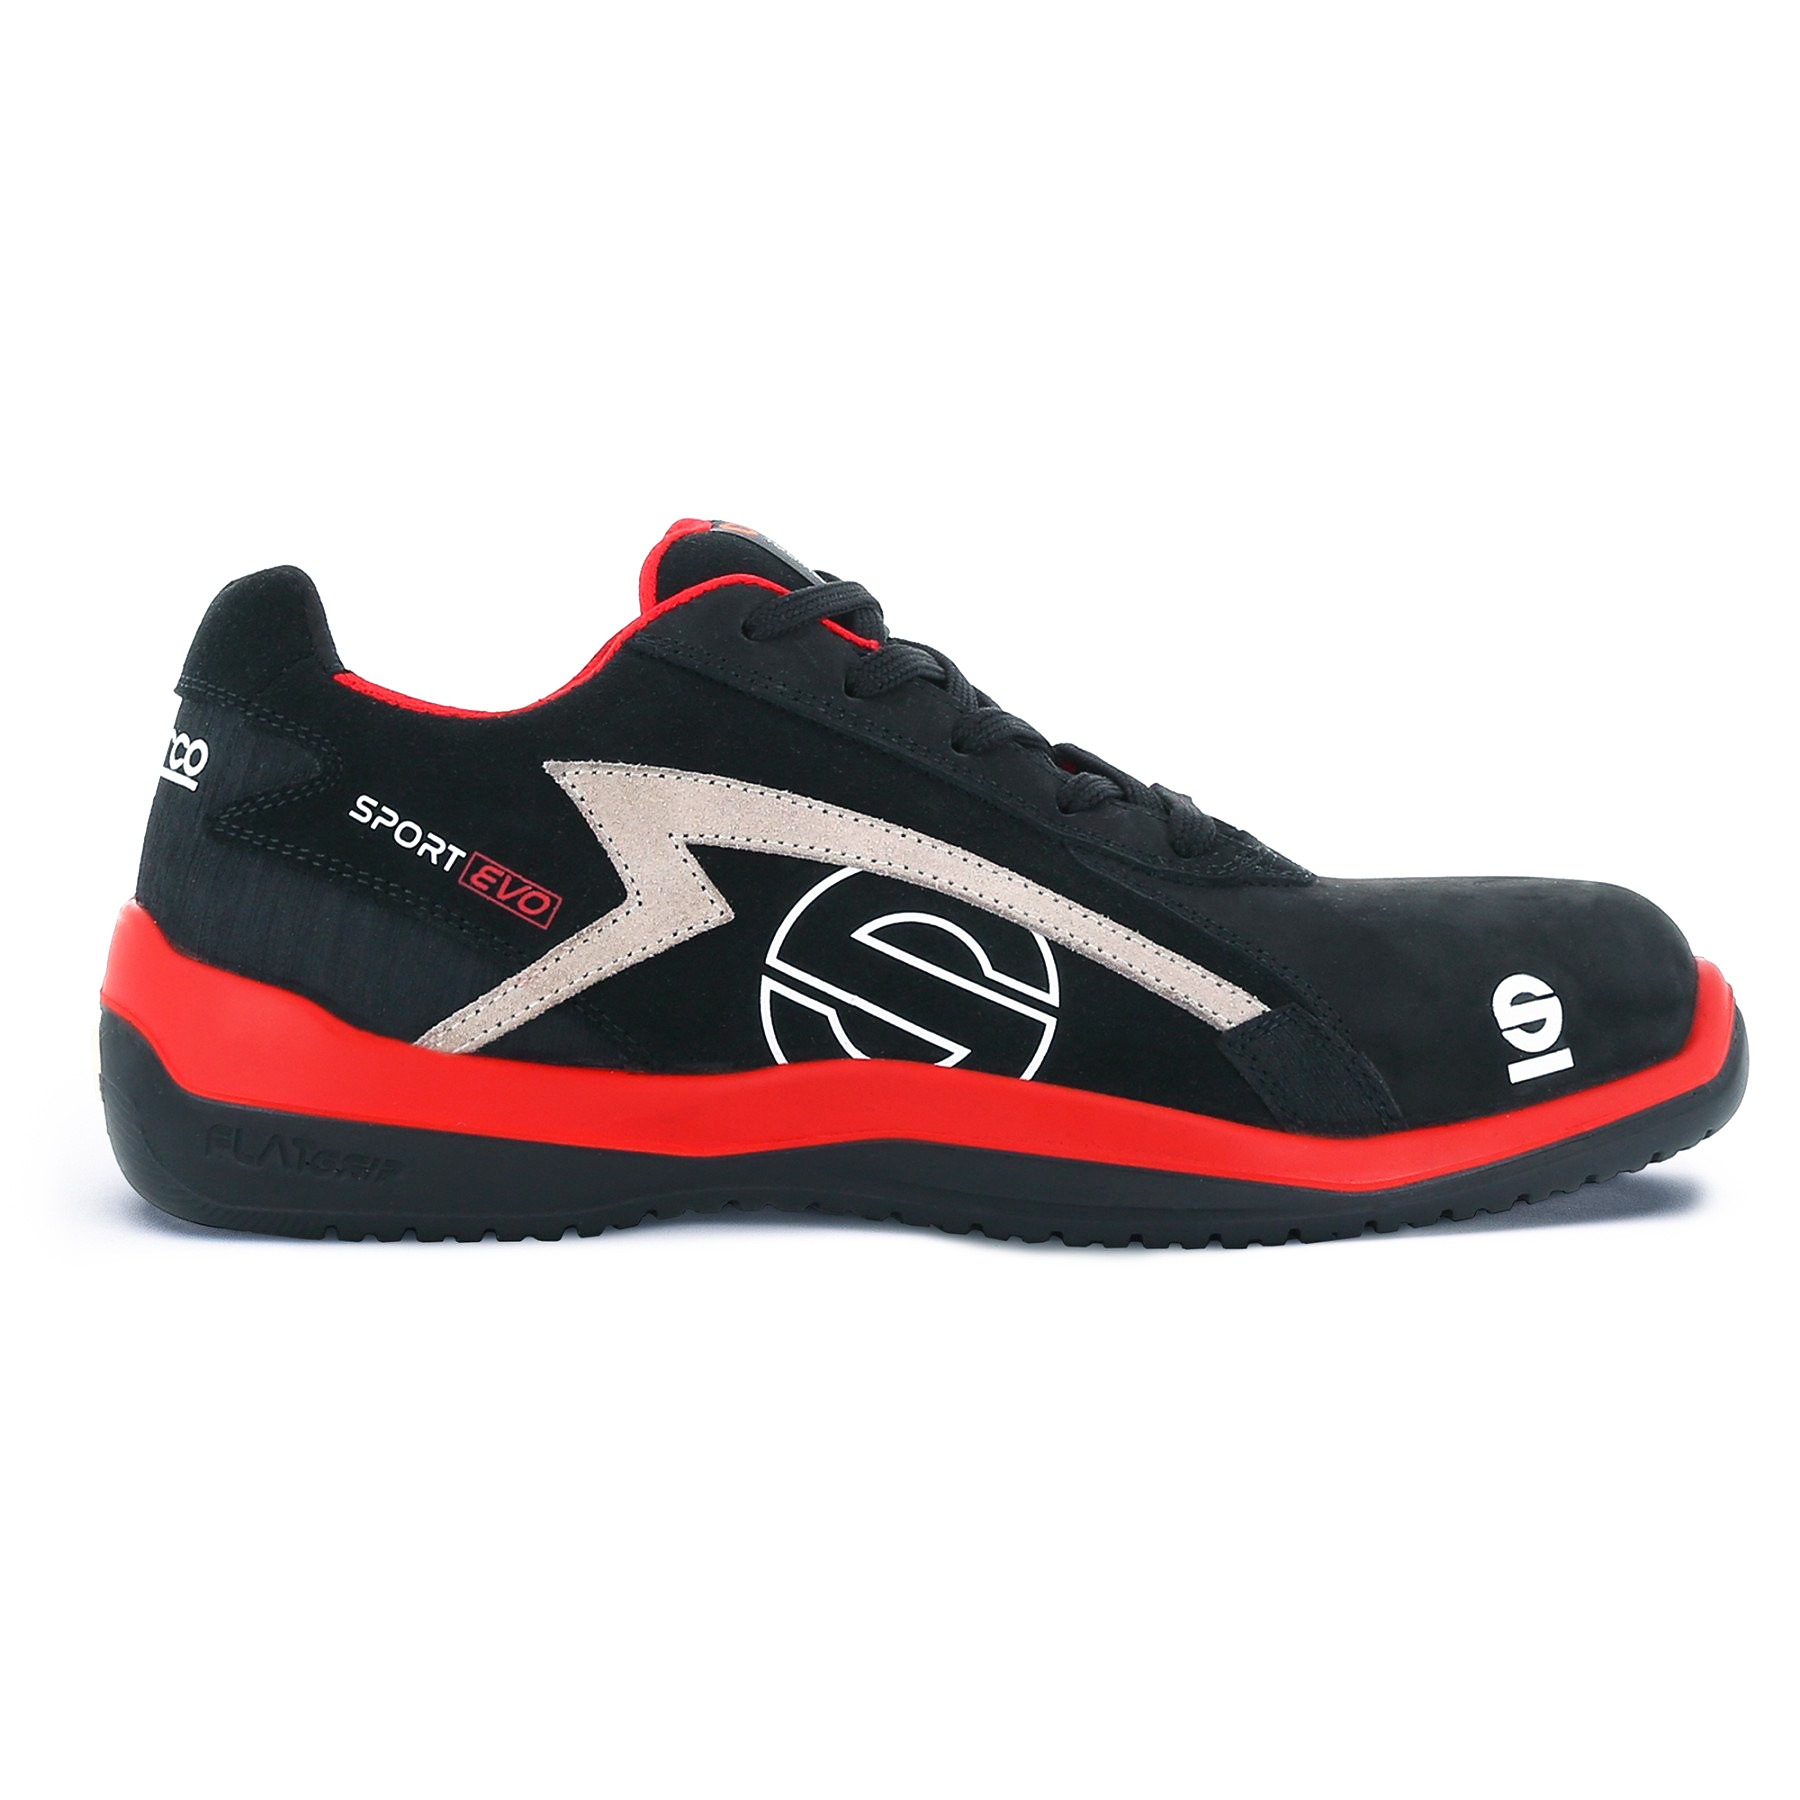 zapato seguridad sport evo donington 07516-rsnr sparco hombre s3